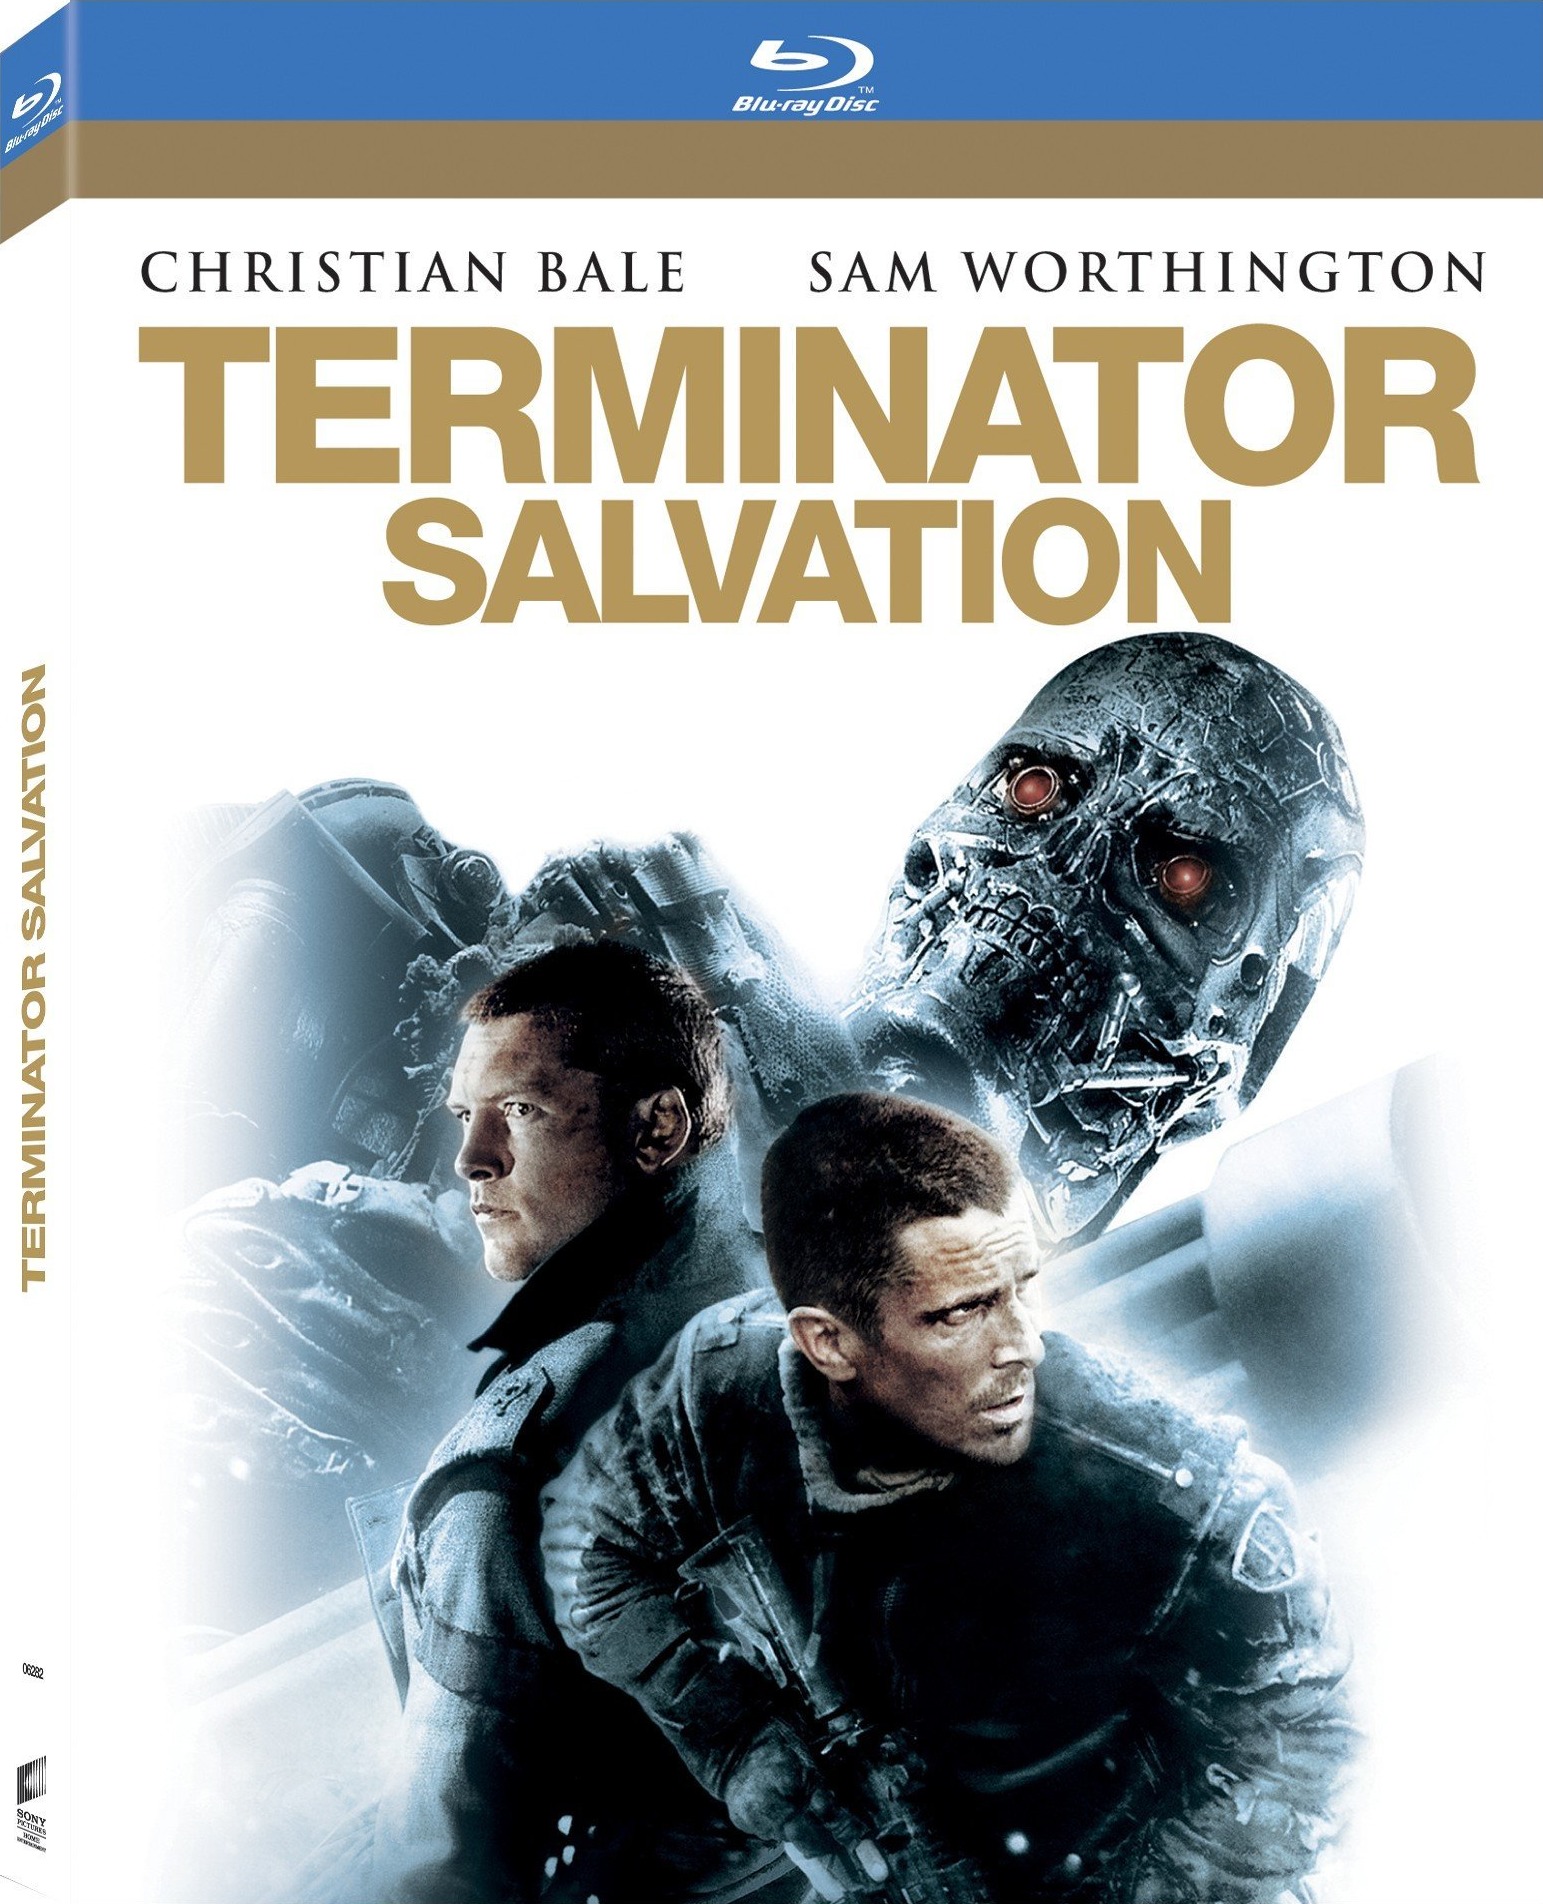 [终结者2018].Terminator.Salvation.2009.BluRay.1080p.AVC.DTS-HD.MA.5.1-Startmenu11    42.62G! v0 N7 \. N: ^% u6 p9 G9 N-3.jpg